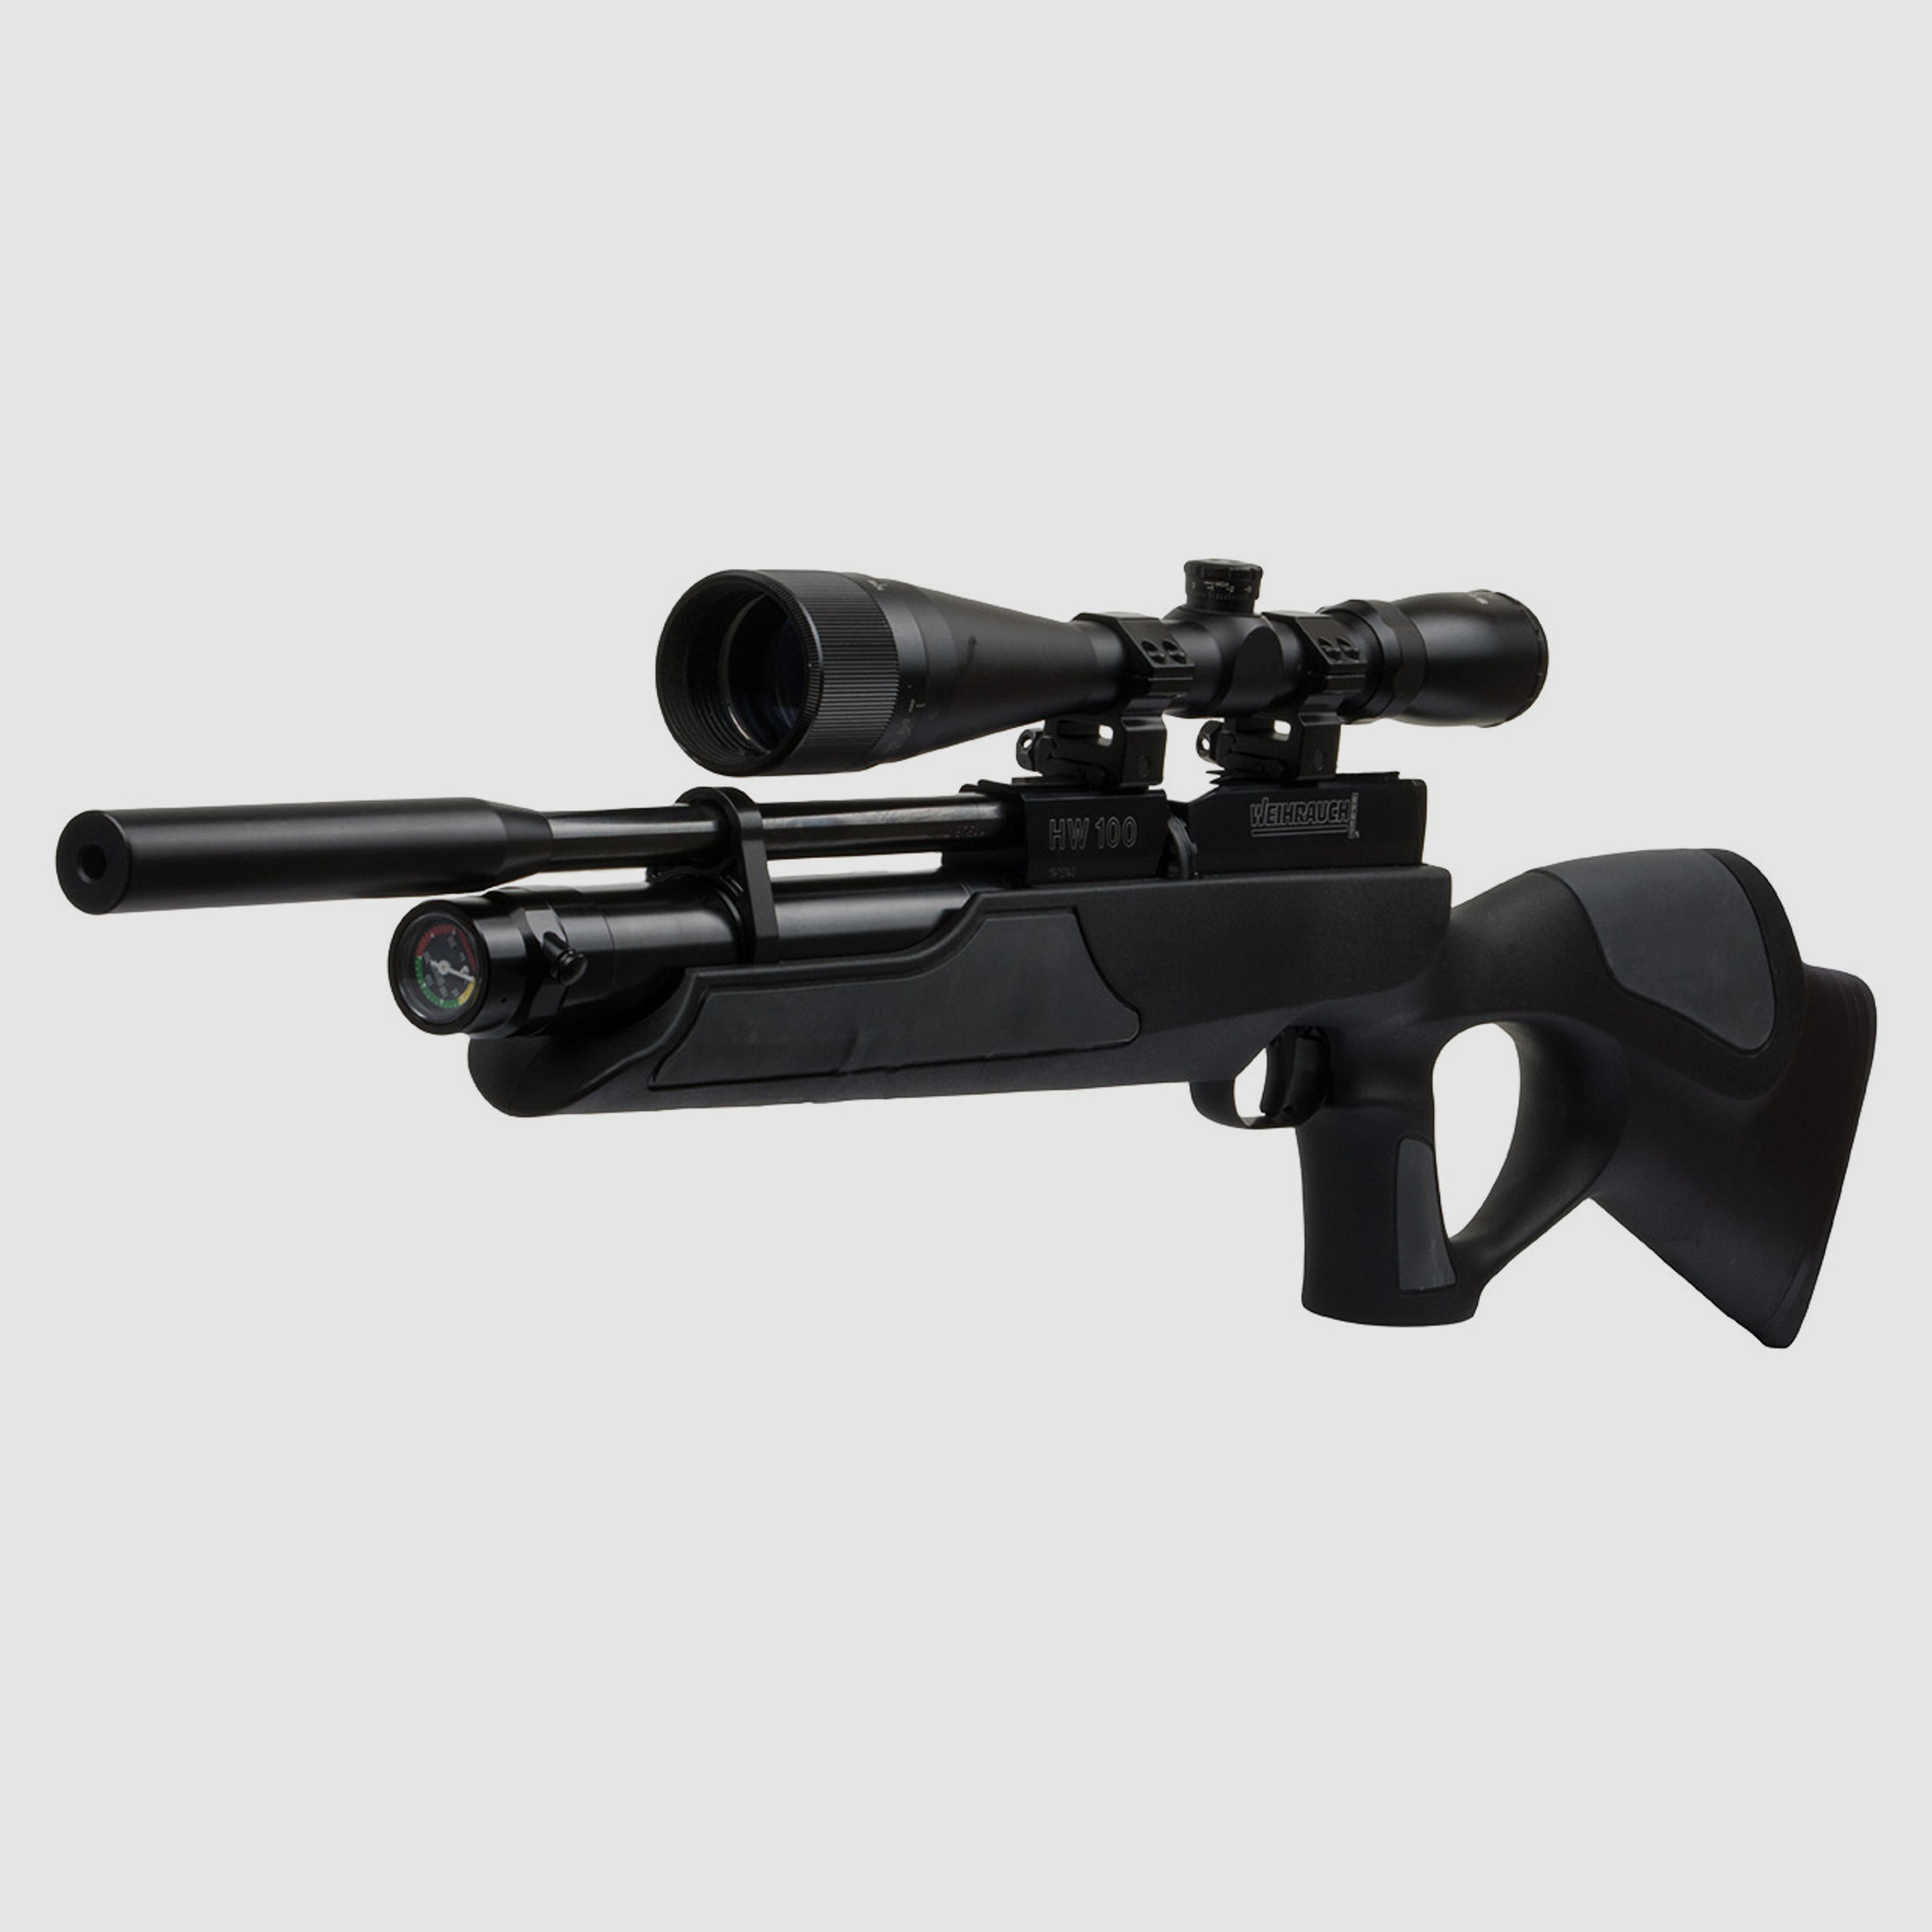 Pressluftgewehr Weihrauch HW 100 TK Carbine Black, schwarz-grauer Synthetik-Lochschaft, Kompensator, Kaliber 4,5 mm (P18)